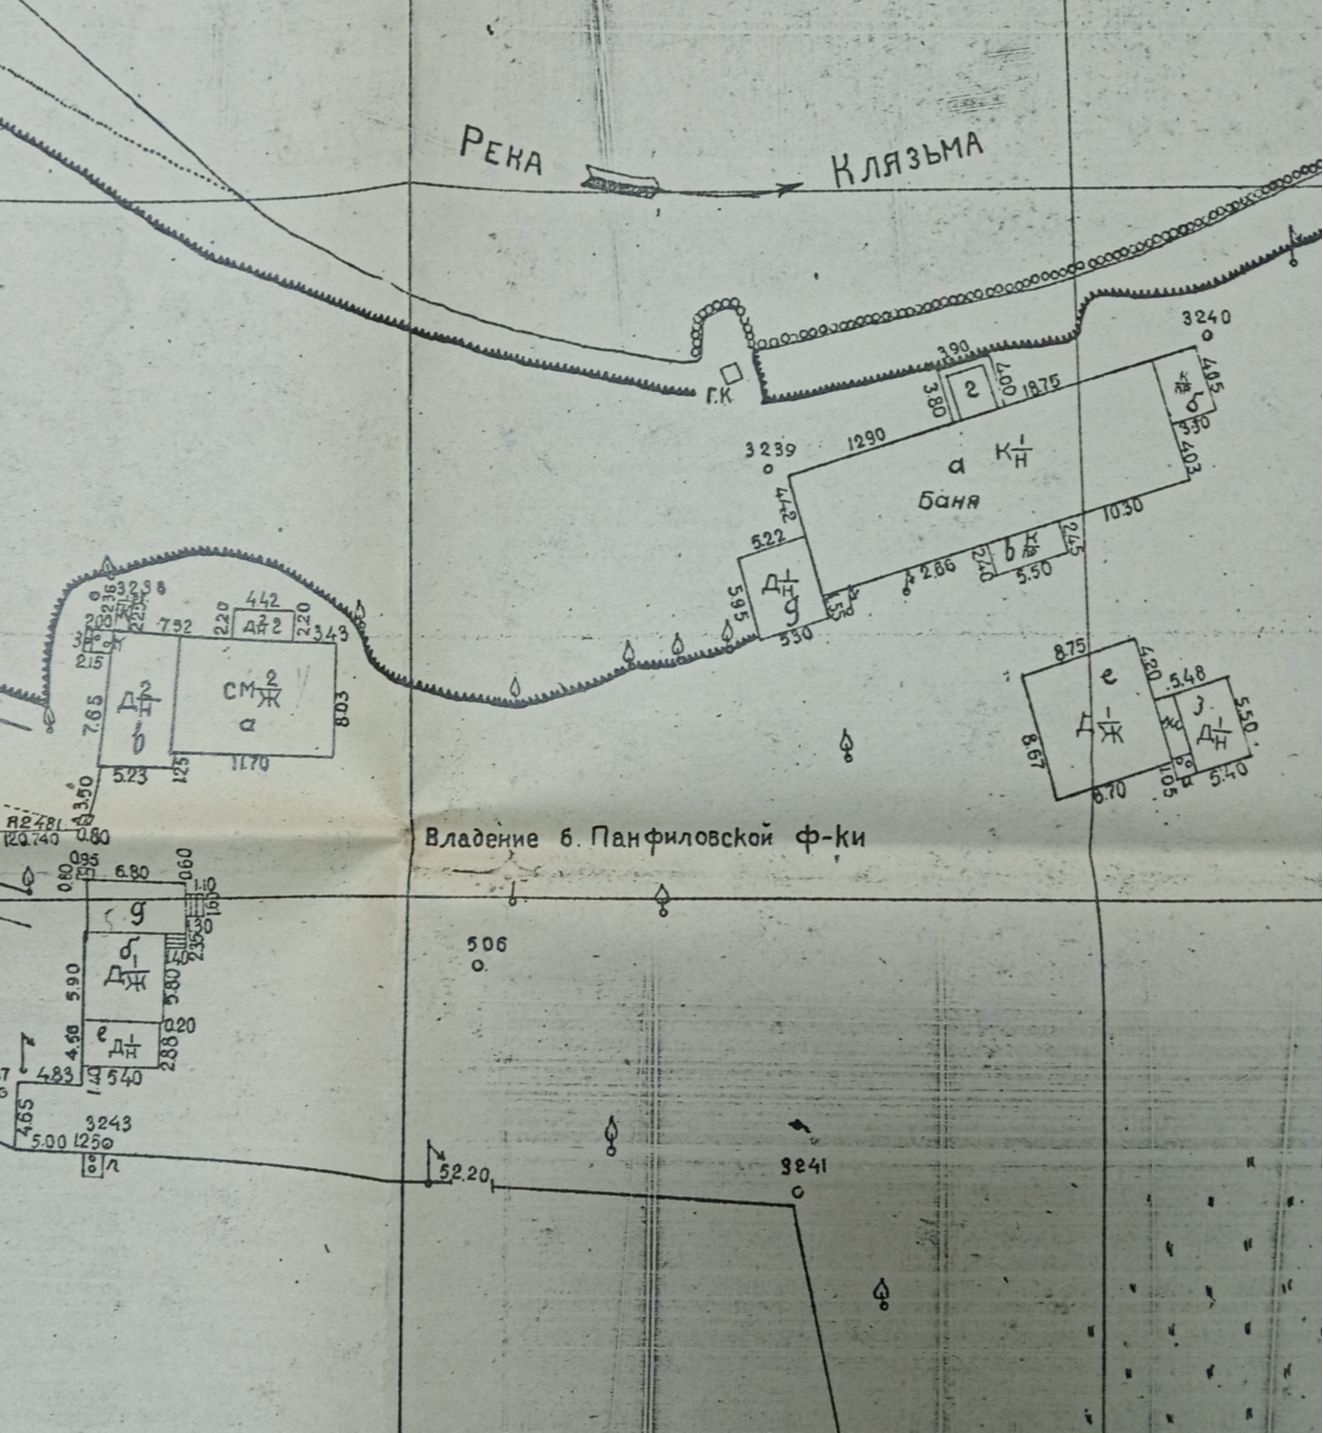 Фрагмент карты города Ногинска 1930 года, на которой изображен участок        посёлка Успенского с местом бывшей Памфиловской фабрики